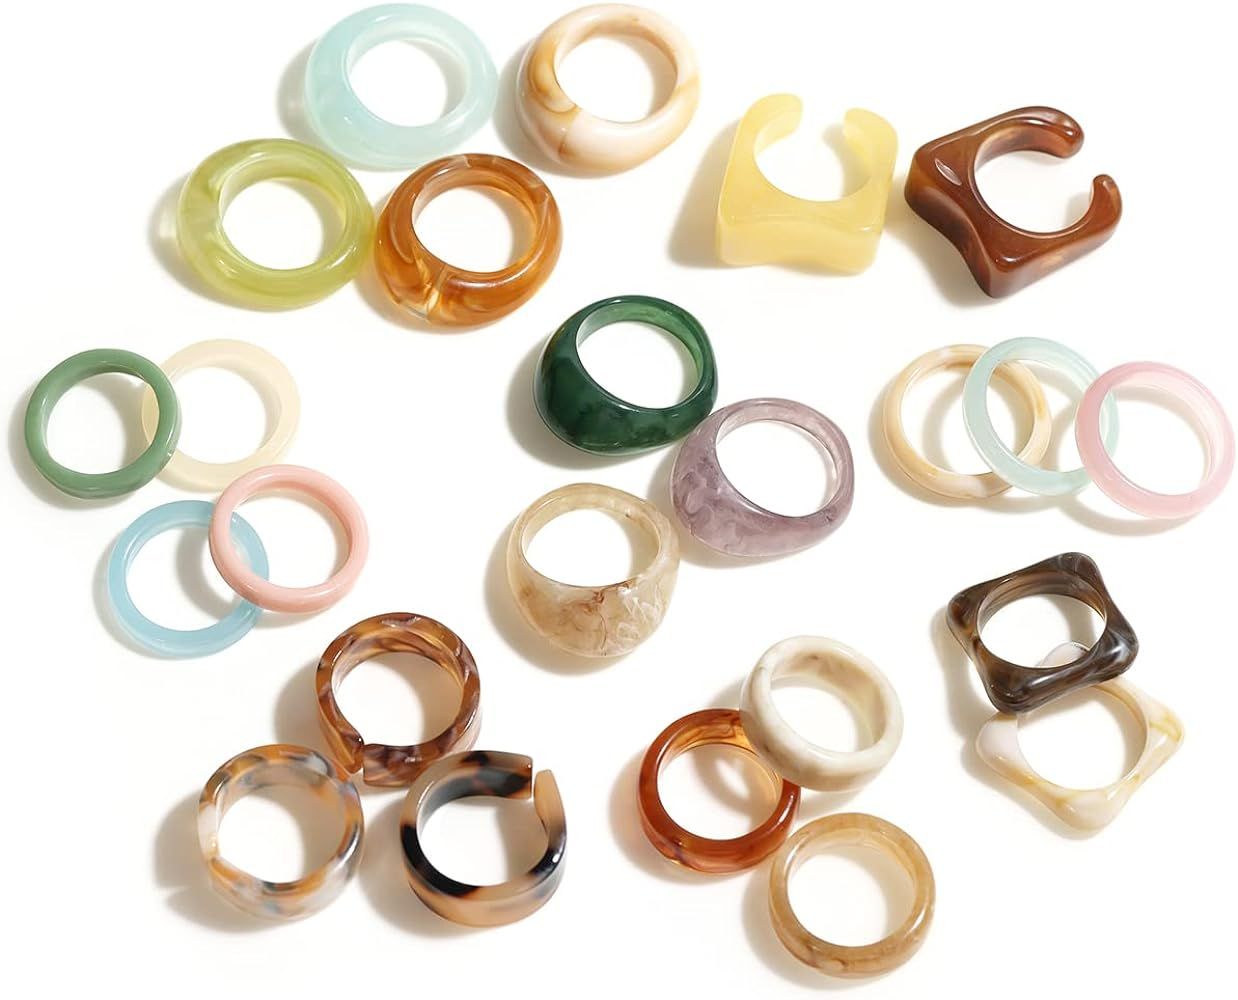 Viva Joya 24-30pcs Resin Rings, Plastic Rings Acrylic Rings Knuckle Rings for Women Teen Girls, C... | Amazon (US)